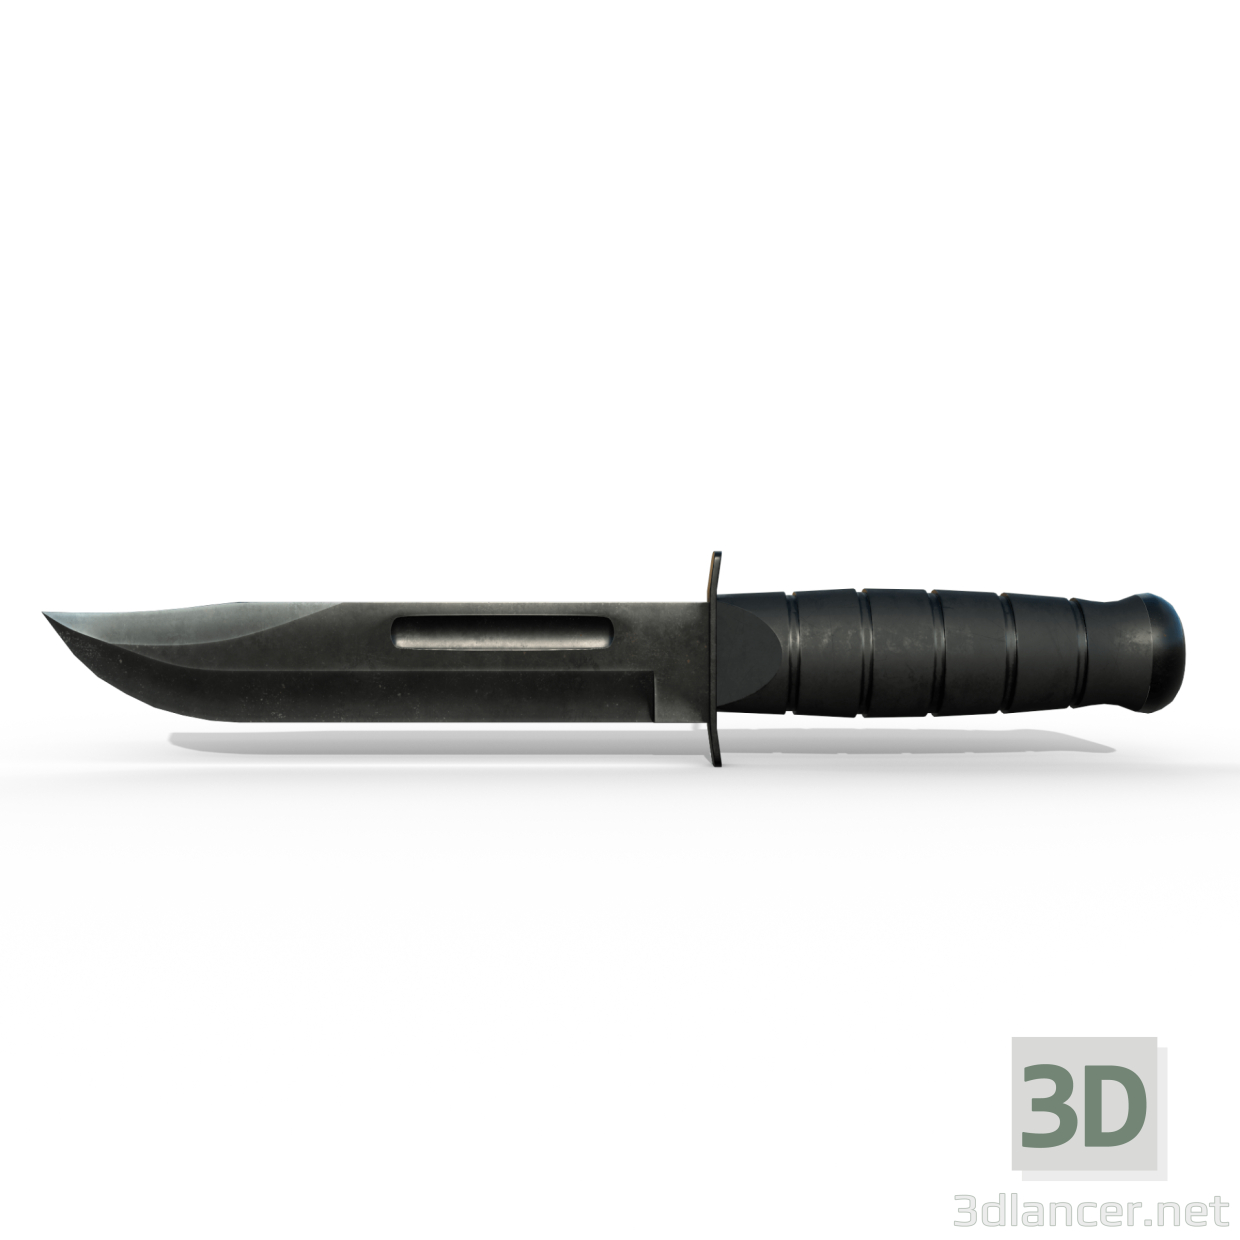 Armeemesser 3D-Modell kaufen - Rendern